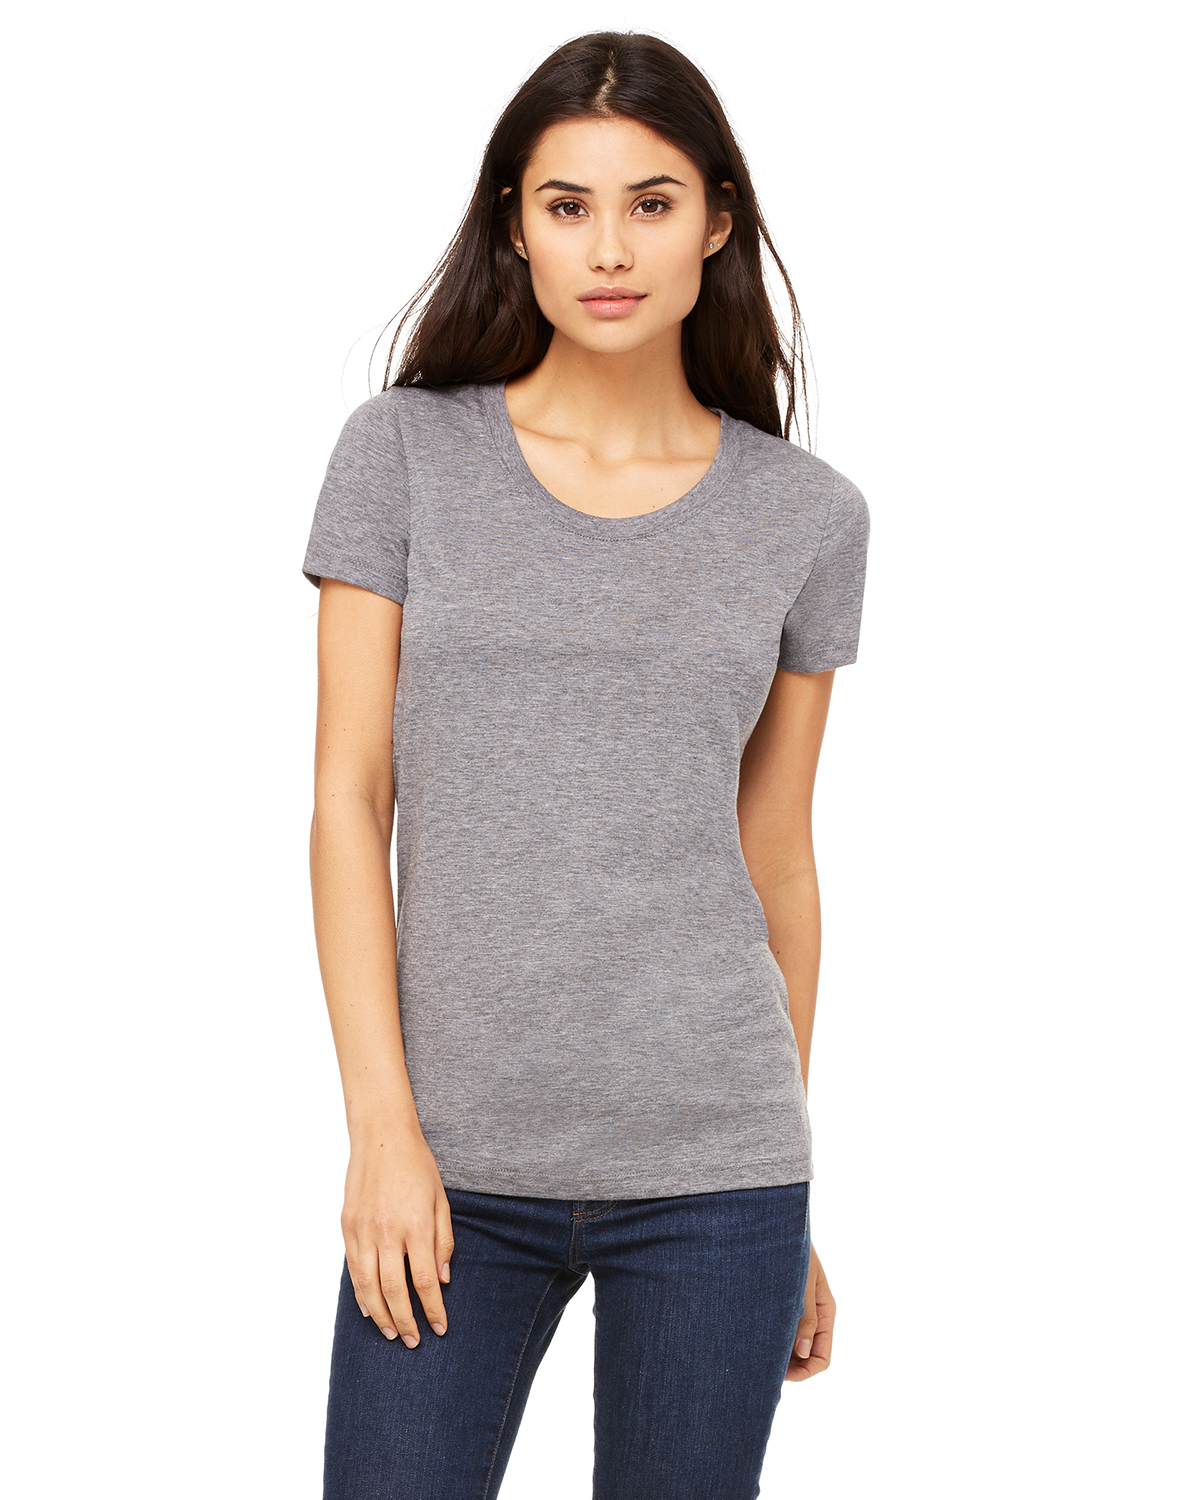 Bella + Canvas B8413 Women Tri-Blend Short-Sleeve T-Shirt | GotApparel.com